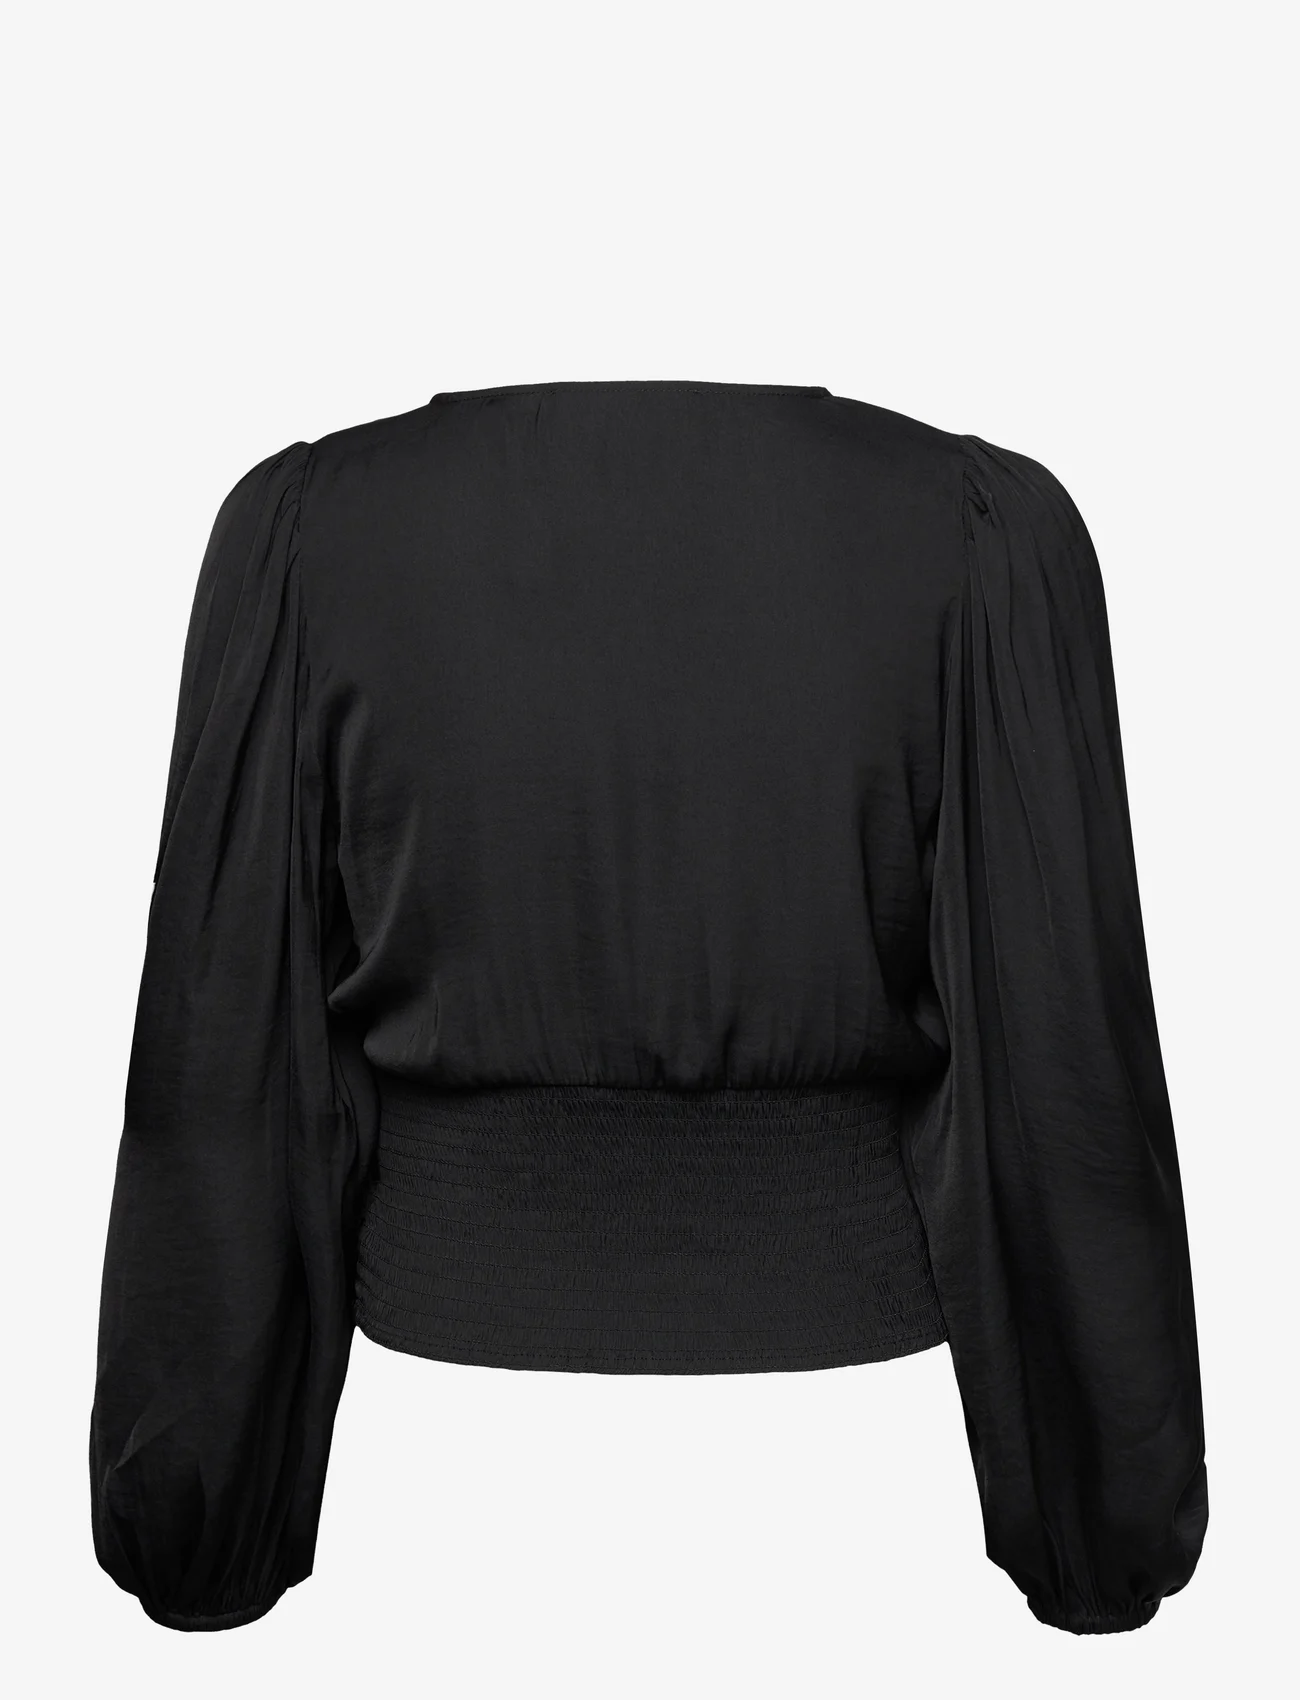 Sofie Schnoor - Blouse - long-sleeved blouses - black - 1